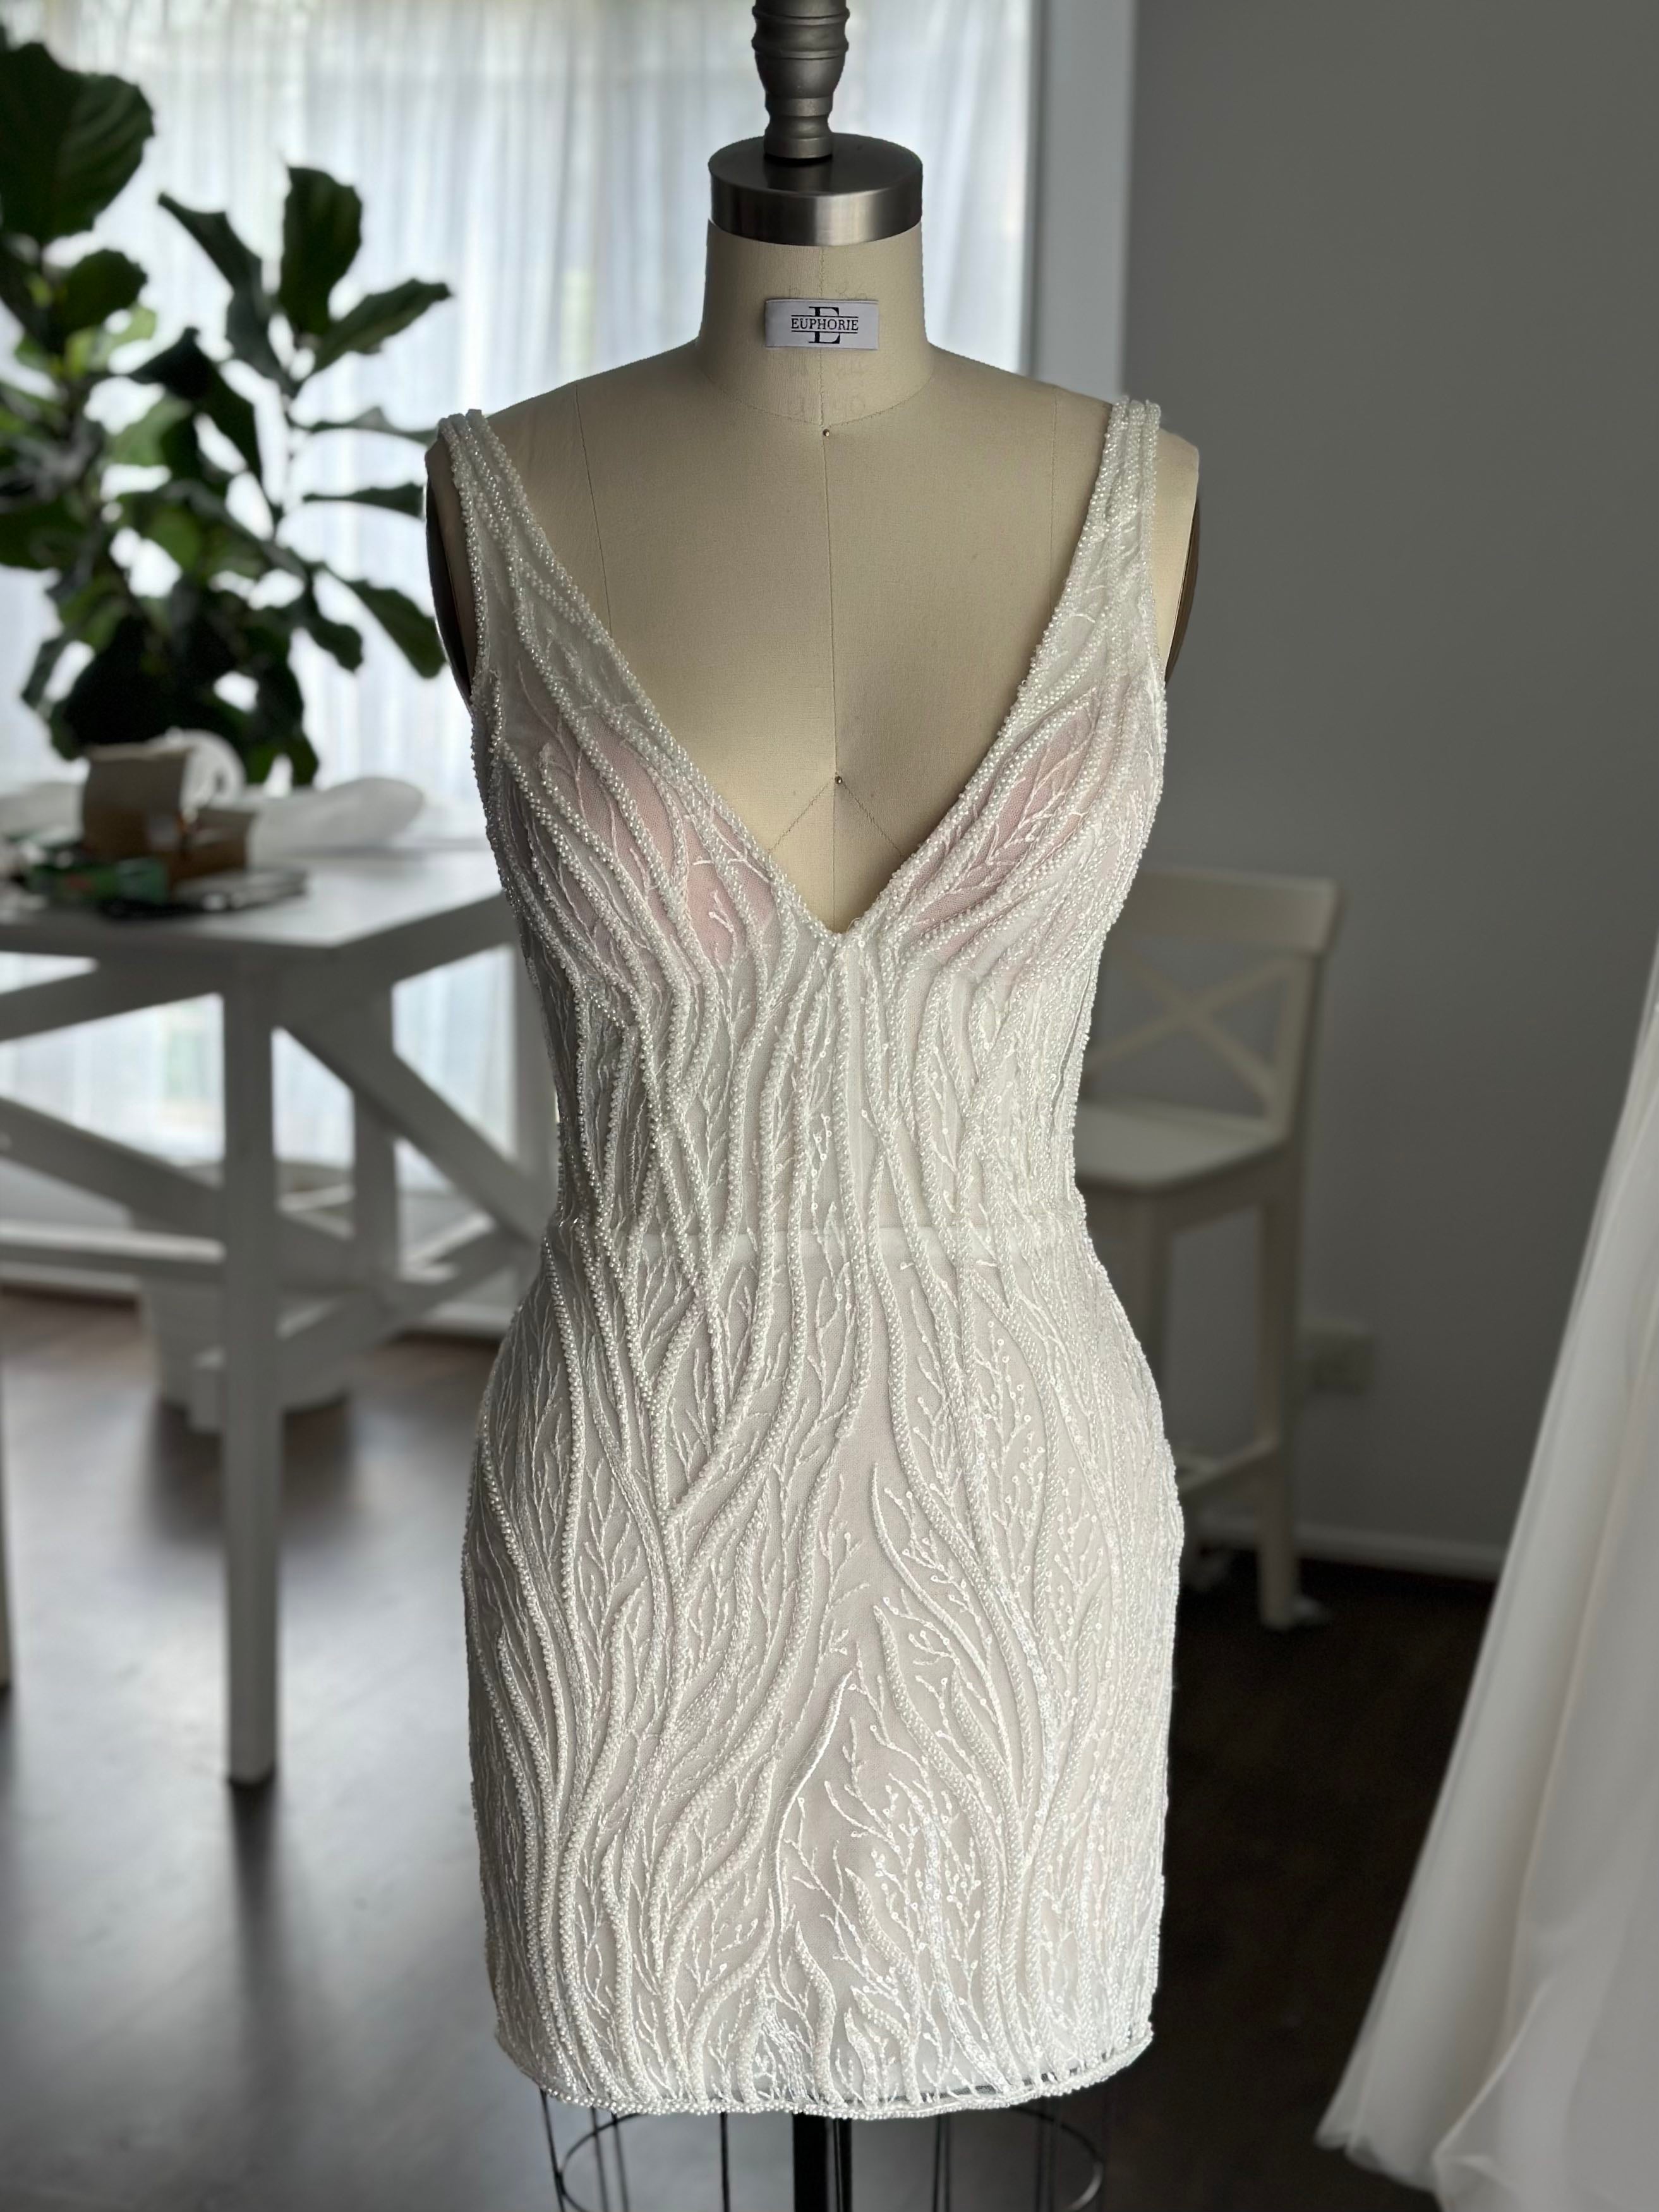 mini vine lace bridal gown on dress form